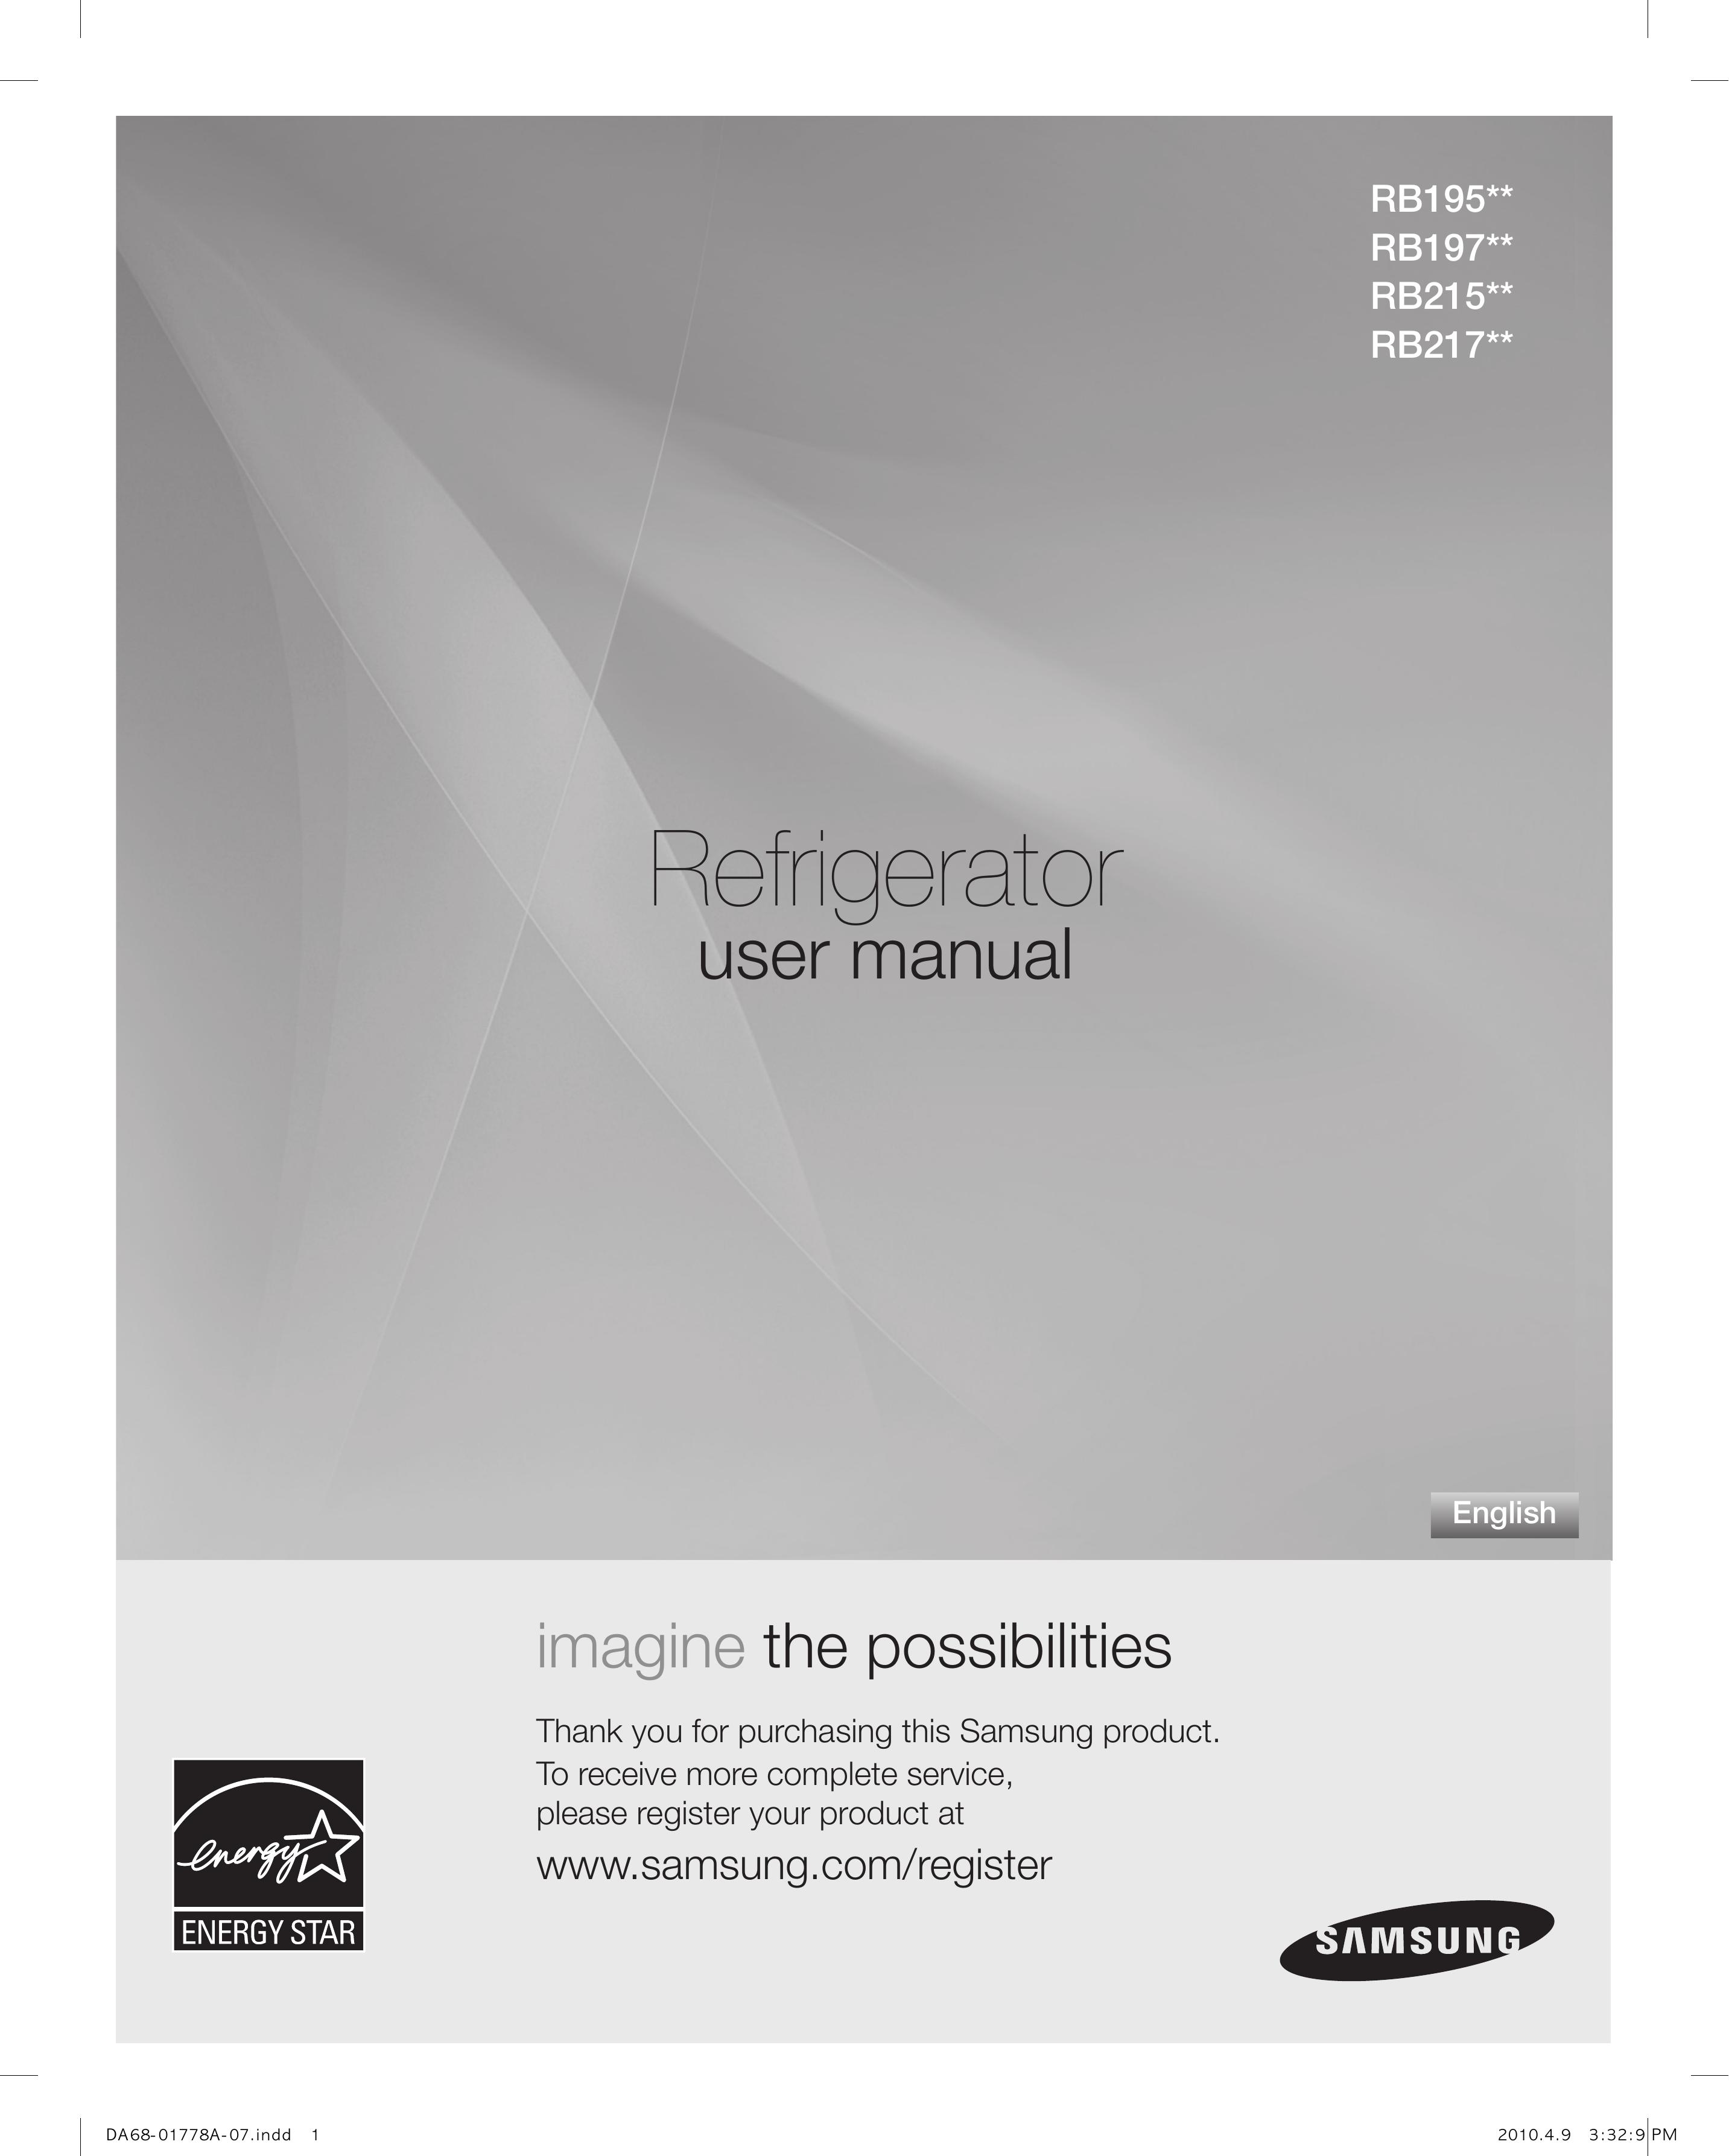 Samsung RB195 Refrigerator User Manual